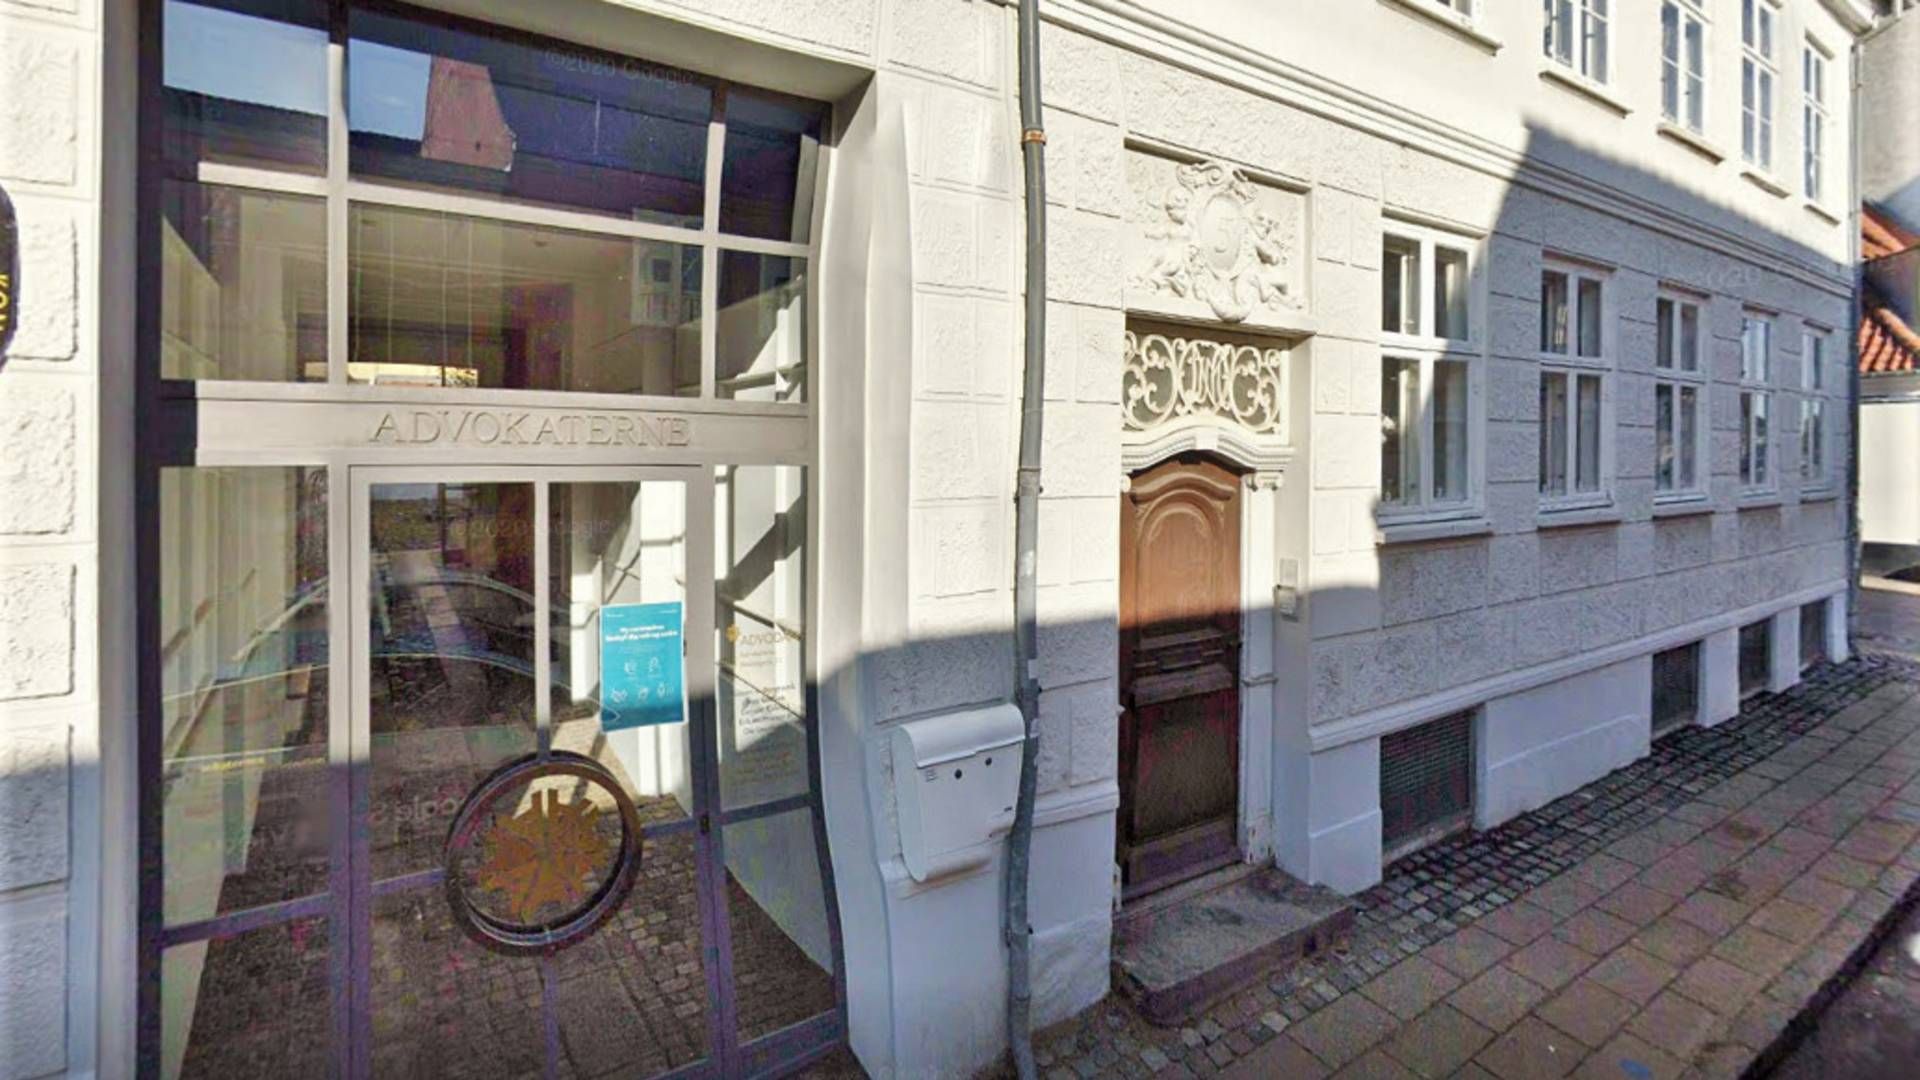 Advodan-kontoret ligger på Strandgade 51, Helsingør. | Foto: GOOGLE MAPS